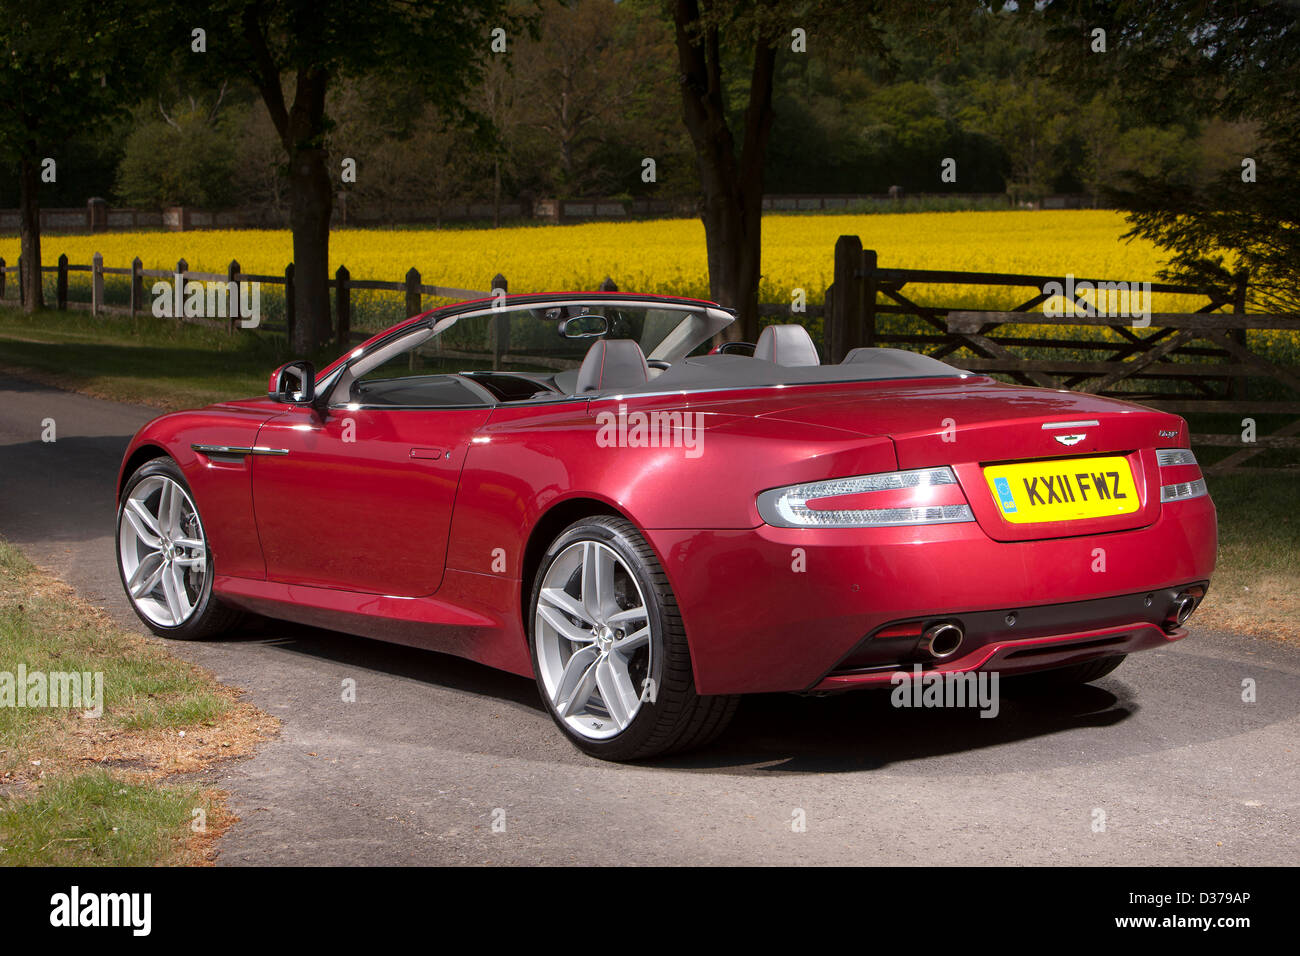 Aston Martin Virage volante rouge voiture décapotable de luxe, Winchester, Royaume-Uni, 28 04 11 Banque D'Images